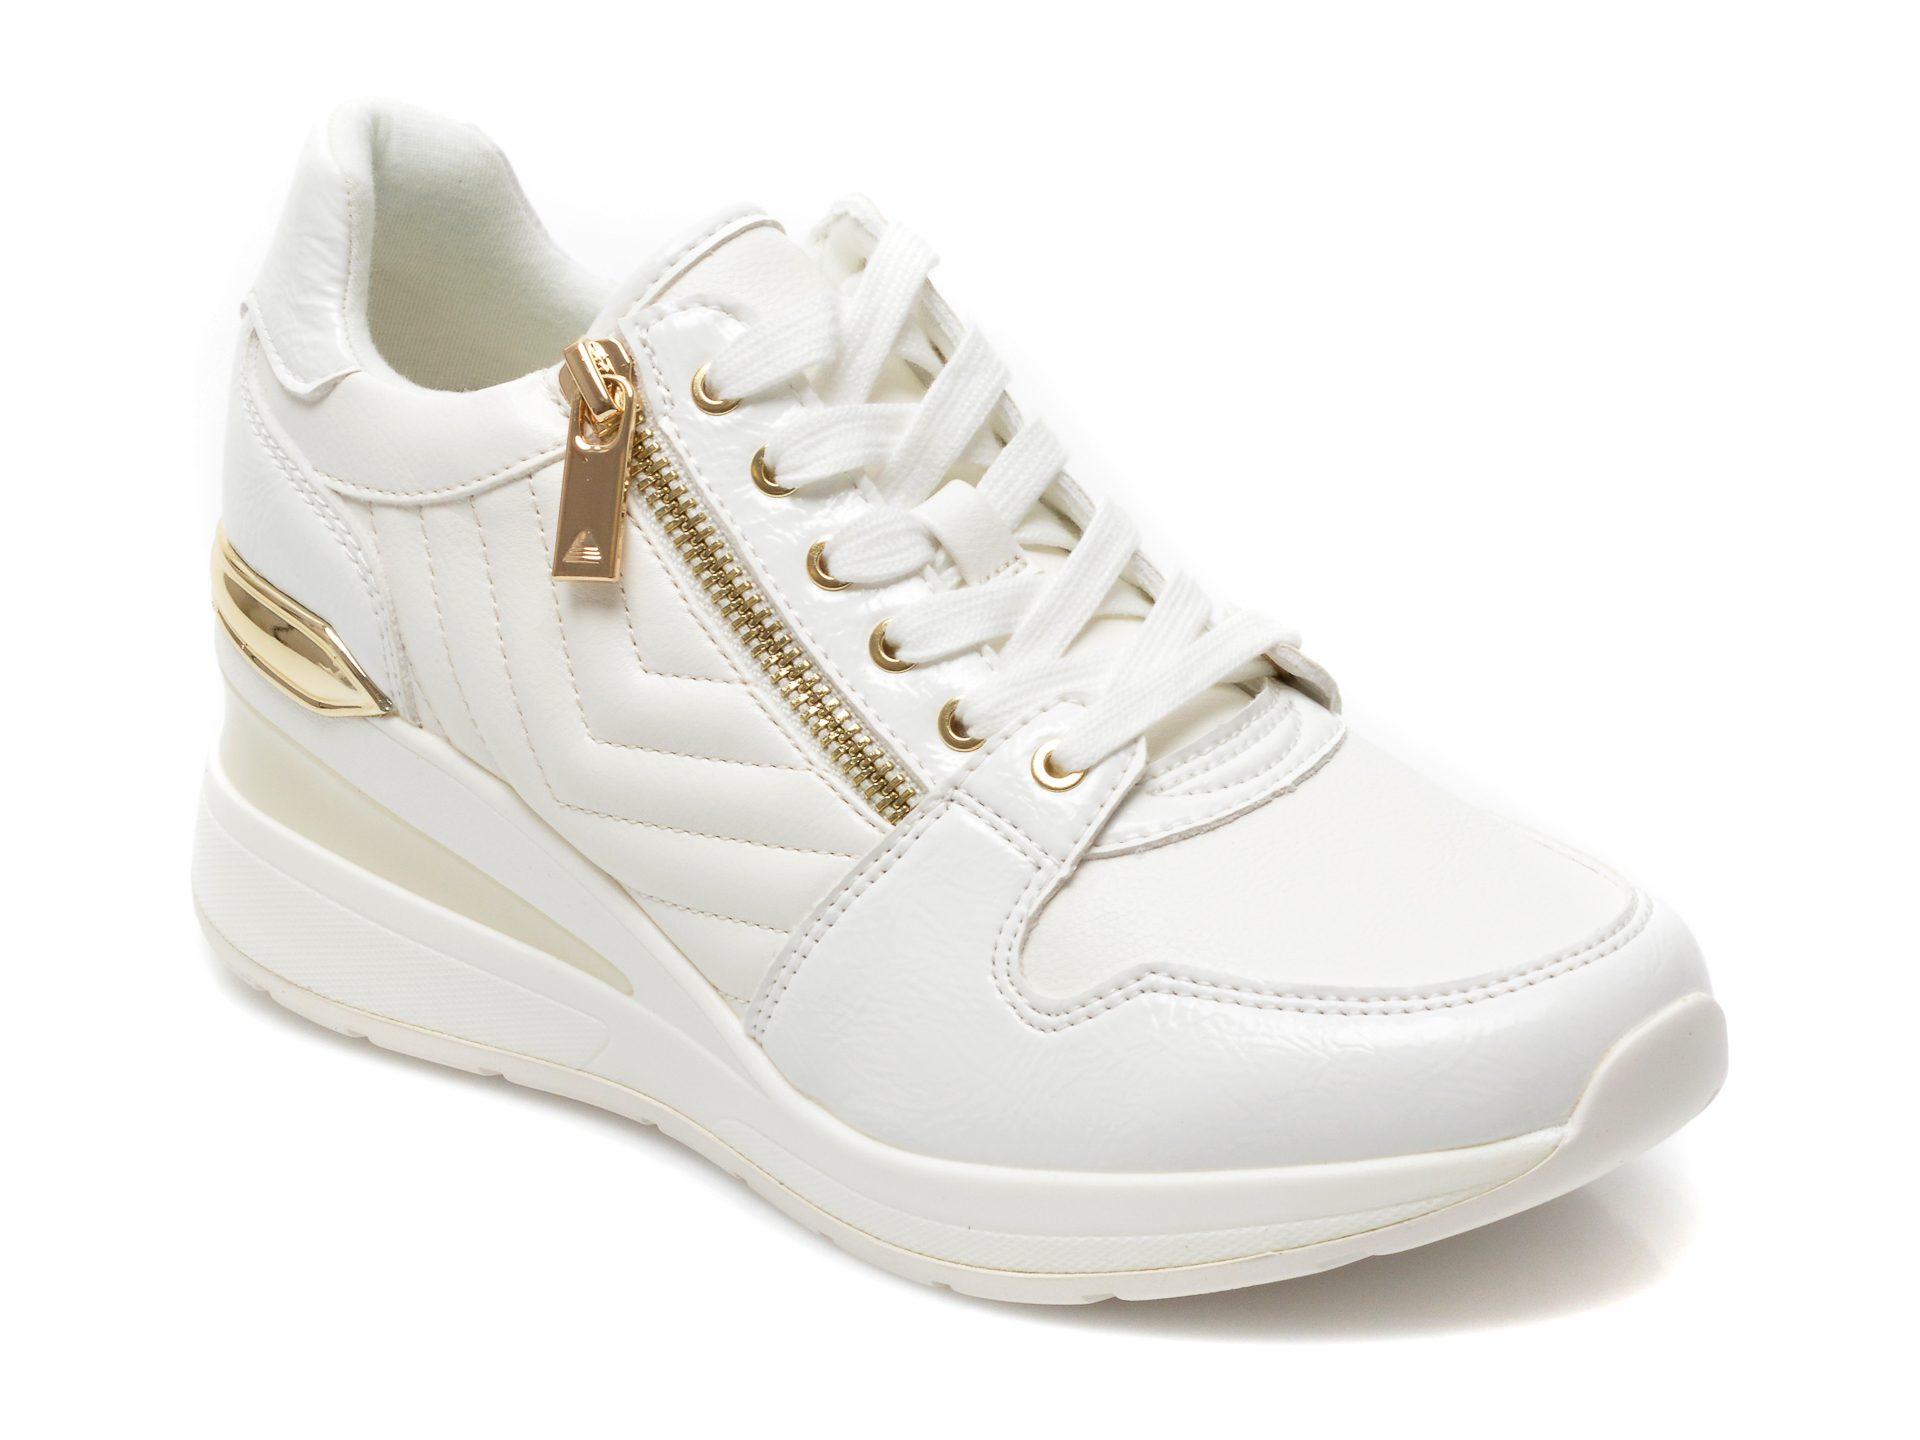 Pantofi sport ALDO albi, ADWIWIA100, din piele ecologica Aldo imagine reduceri